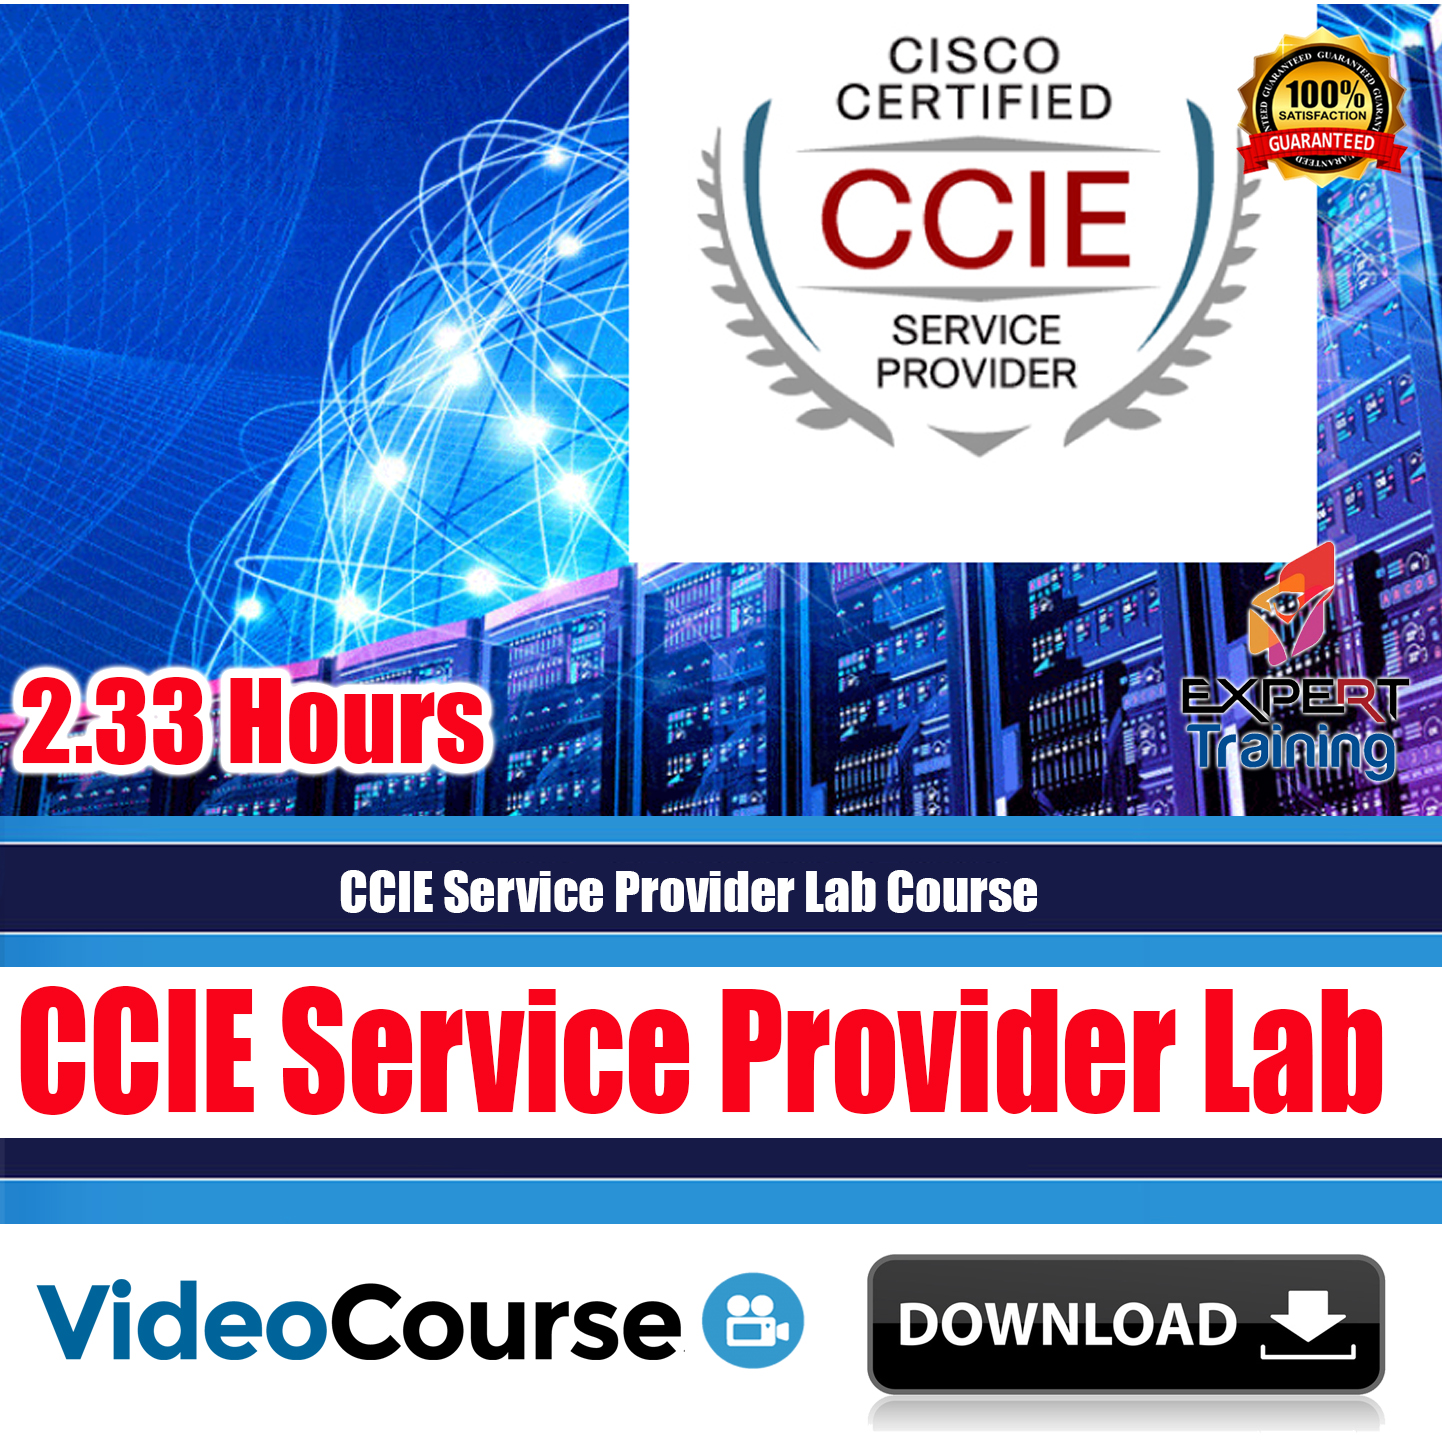 CCIE Service Provider Lab Course & PDF Guides